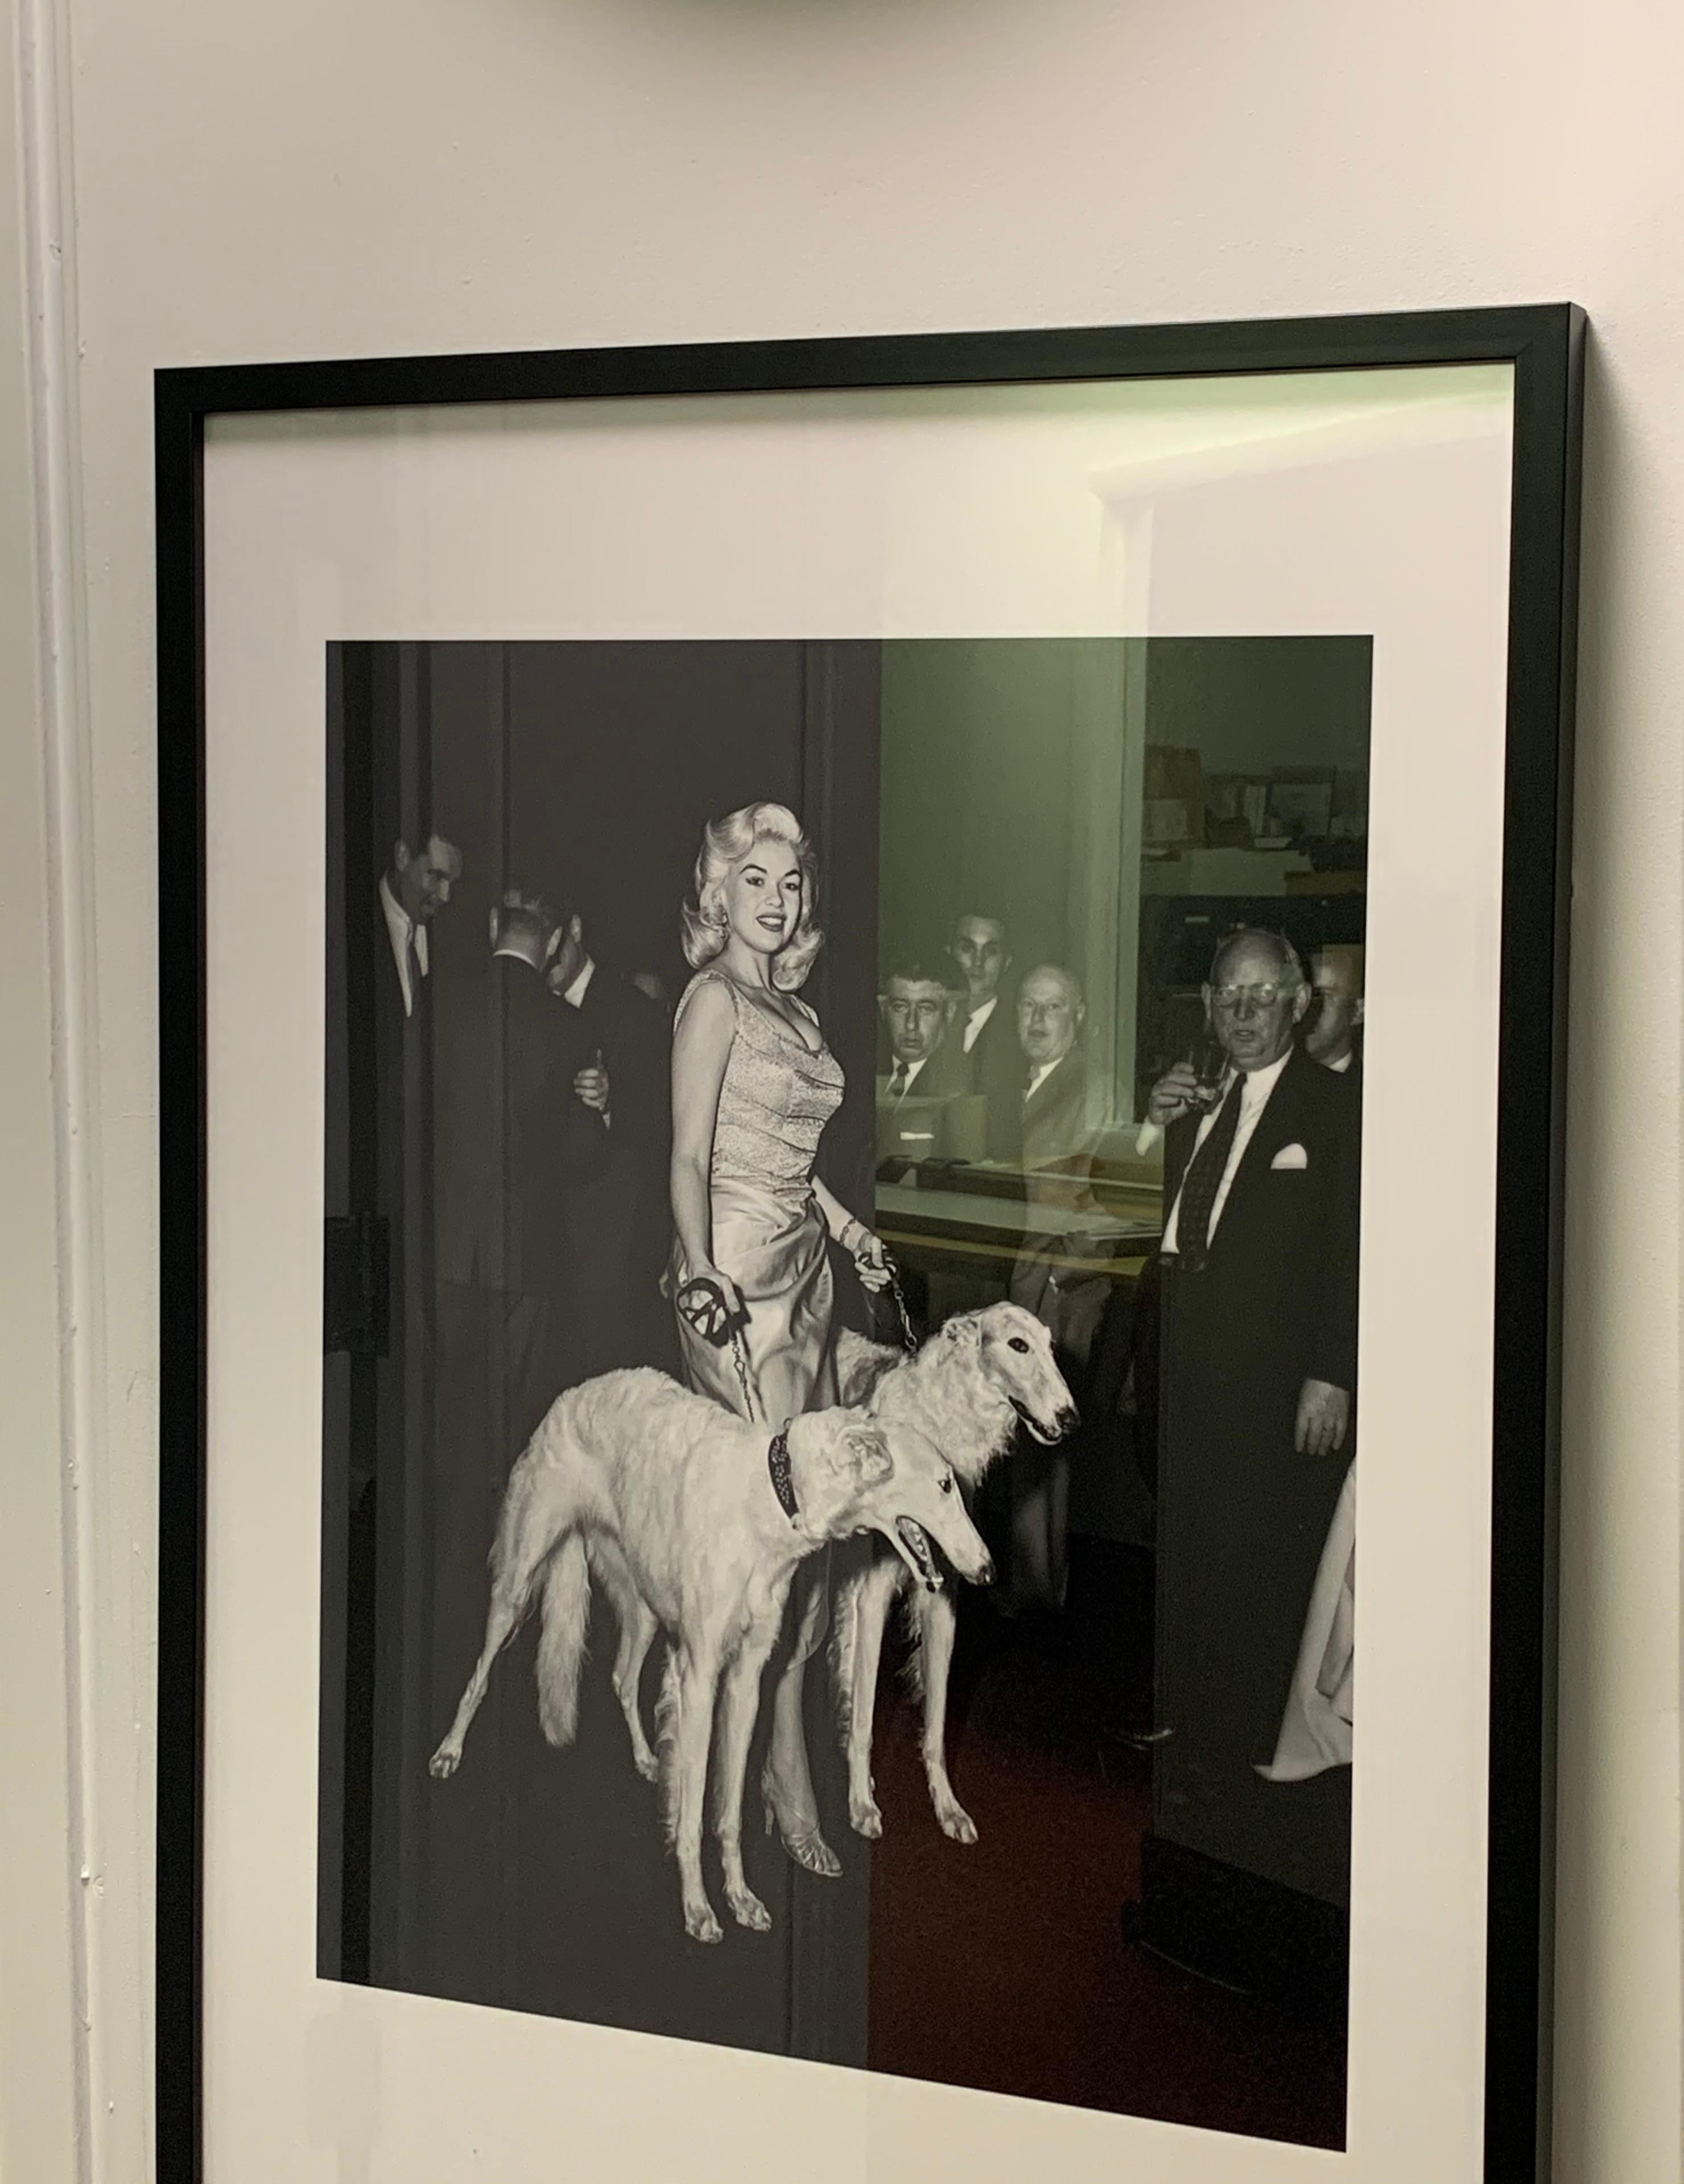 Jayne Mansfield with Seagrams Dogs (édition limitée à 10 exemplaires, n° 6/10) - 76,2 x 101,6 cm - Noir Black and White Photograph par Barry Kramer